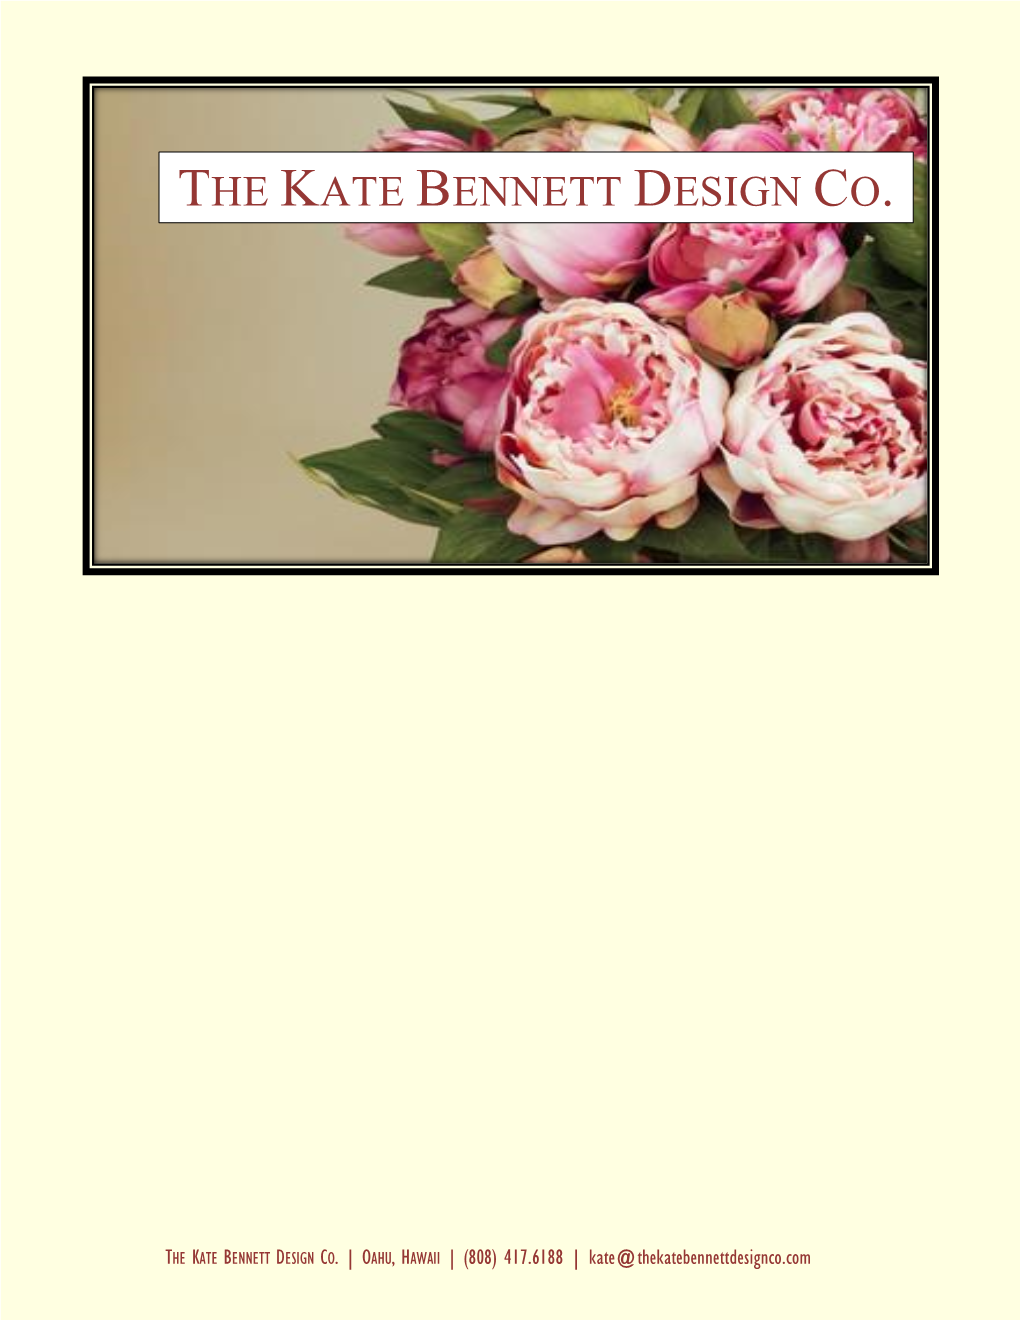 The Kate Bennett Design Co